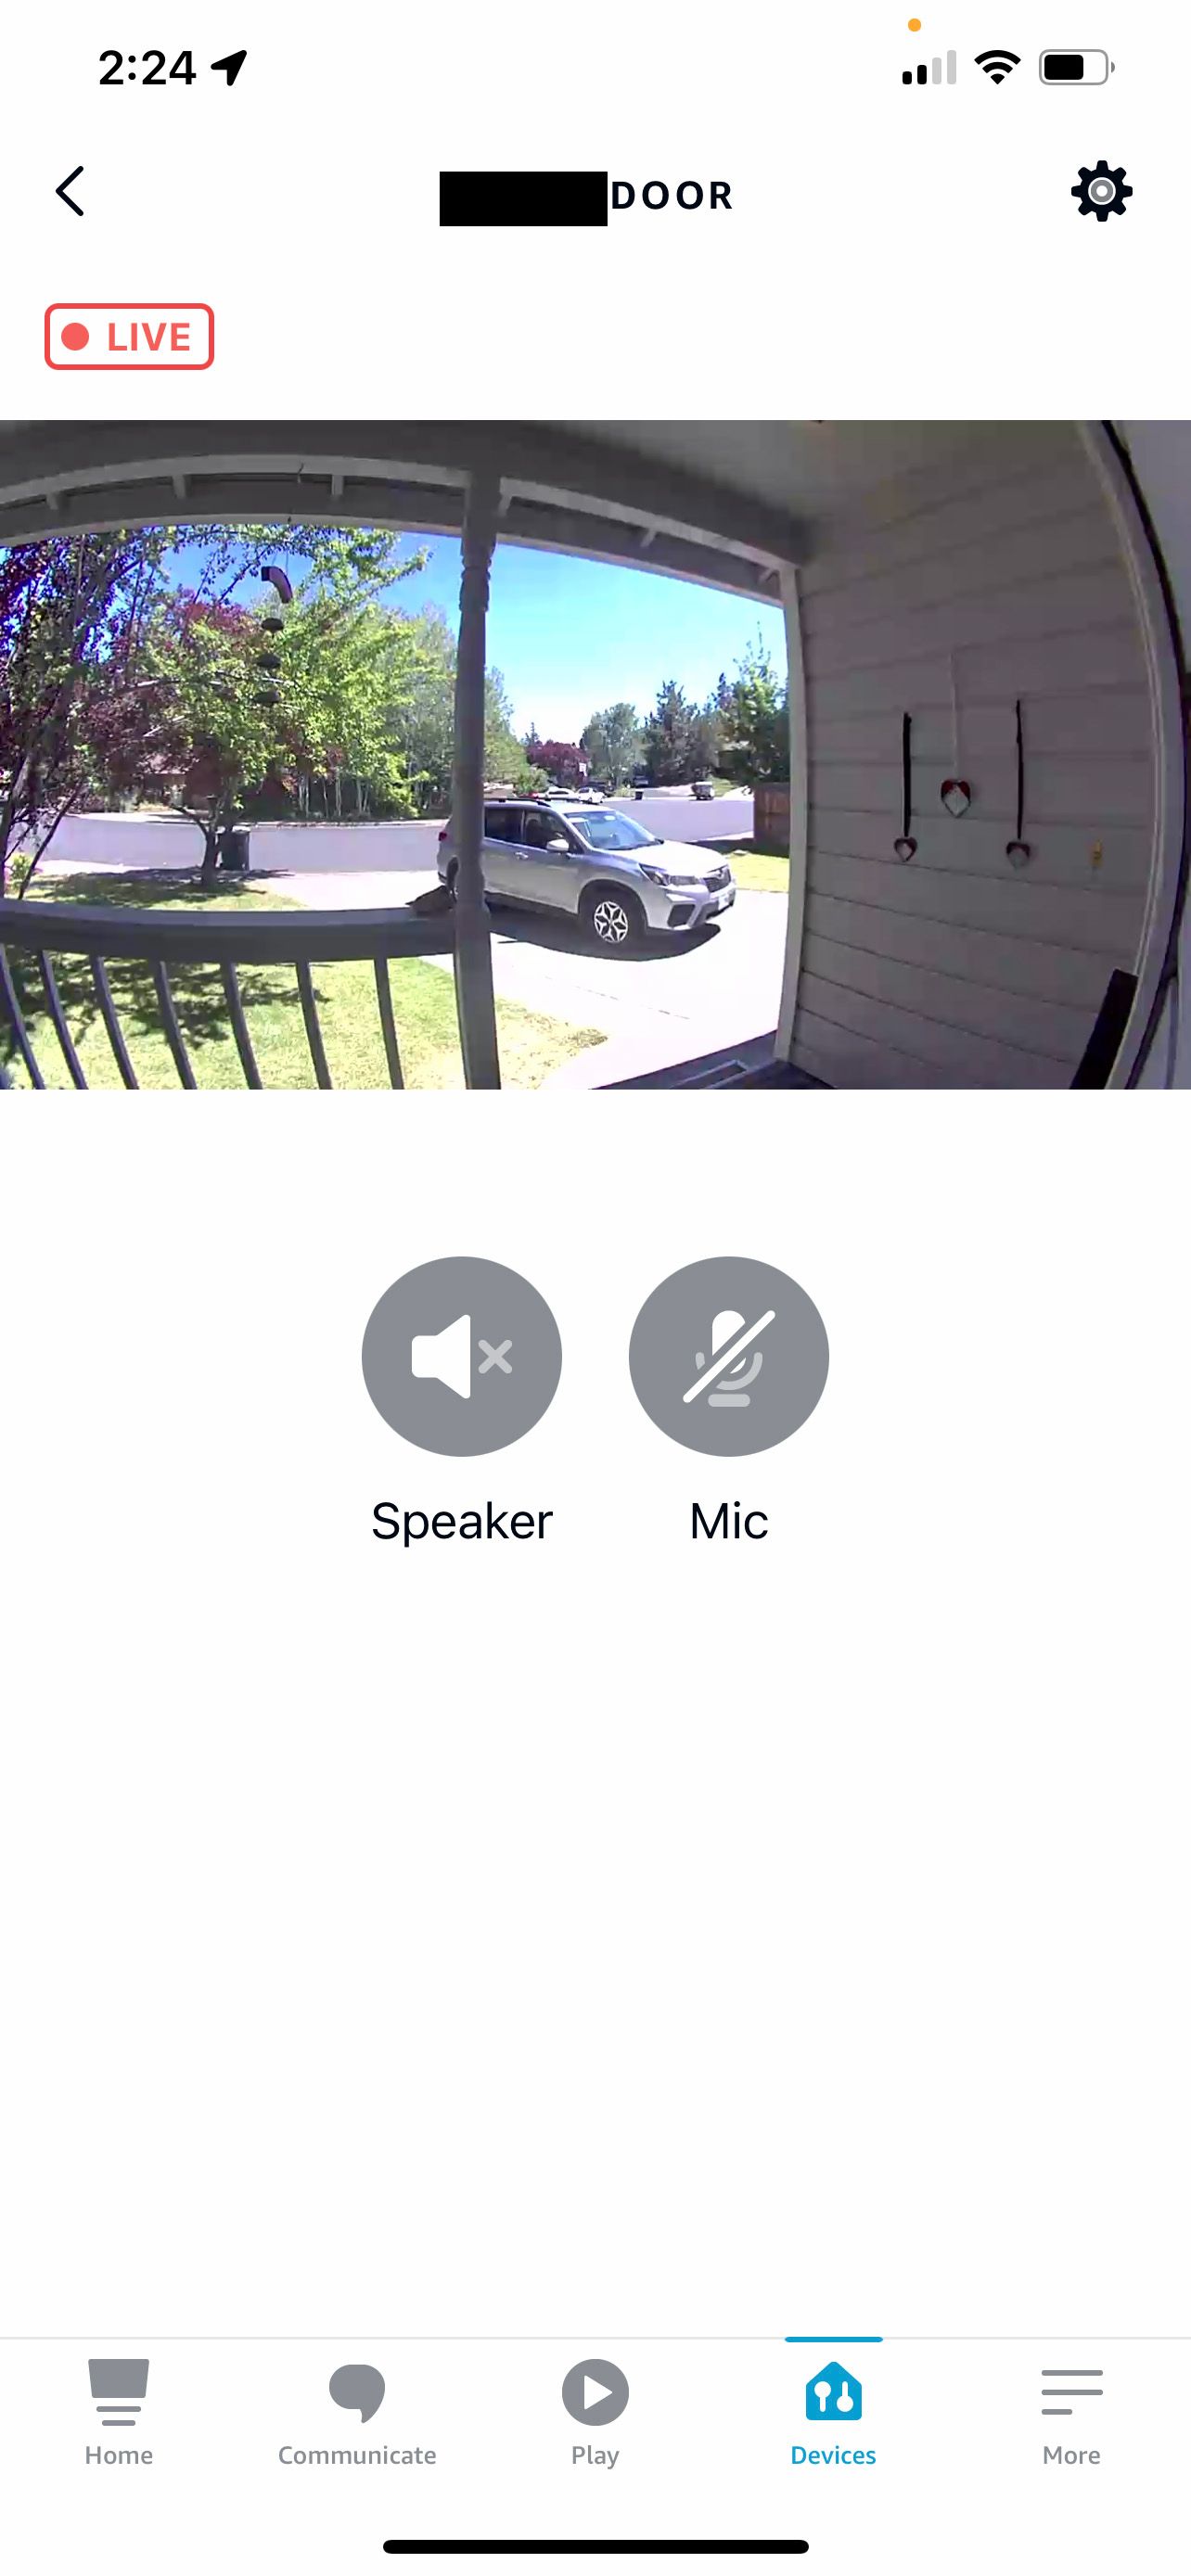 A view of the front door in the Alexa app